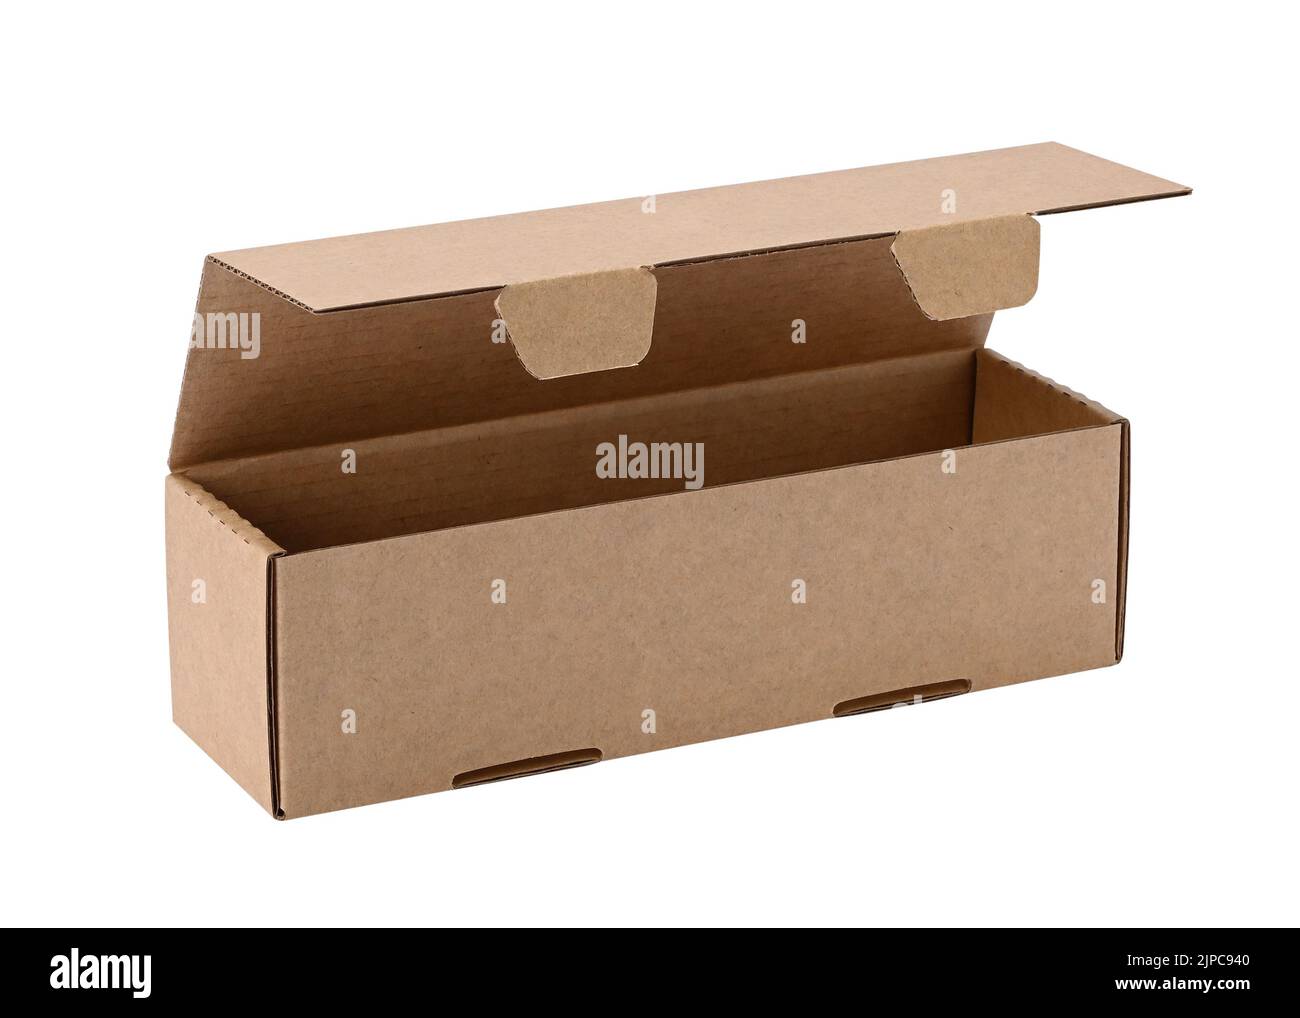 Drei Viertel Ansicht von einem leeren Karton Box mit geöffnetem Deckel für Verpackung Habseligkeiten und Lieferung isoliert auf weißem Hintergrund Stockfoto